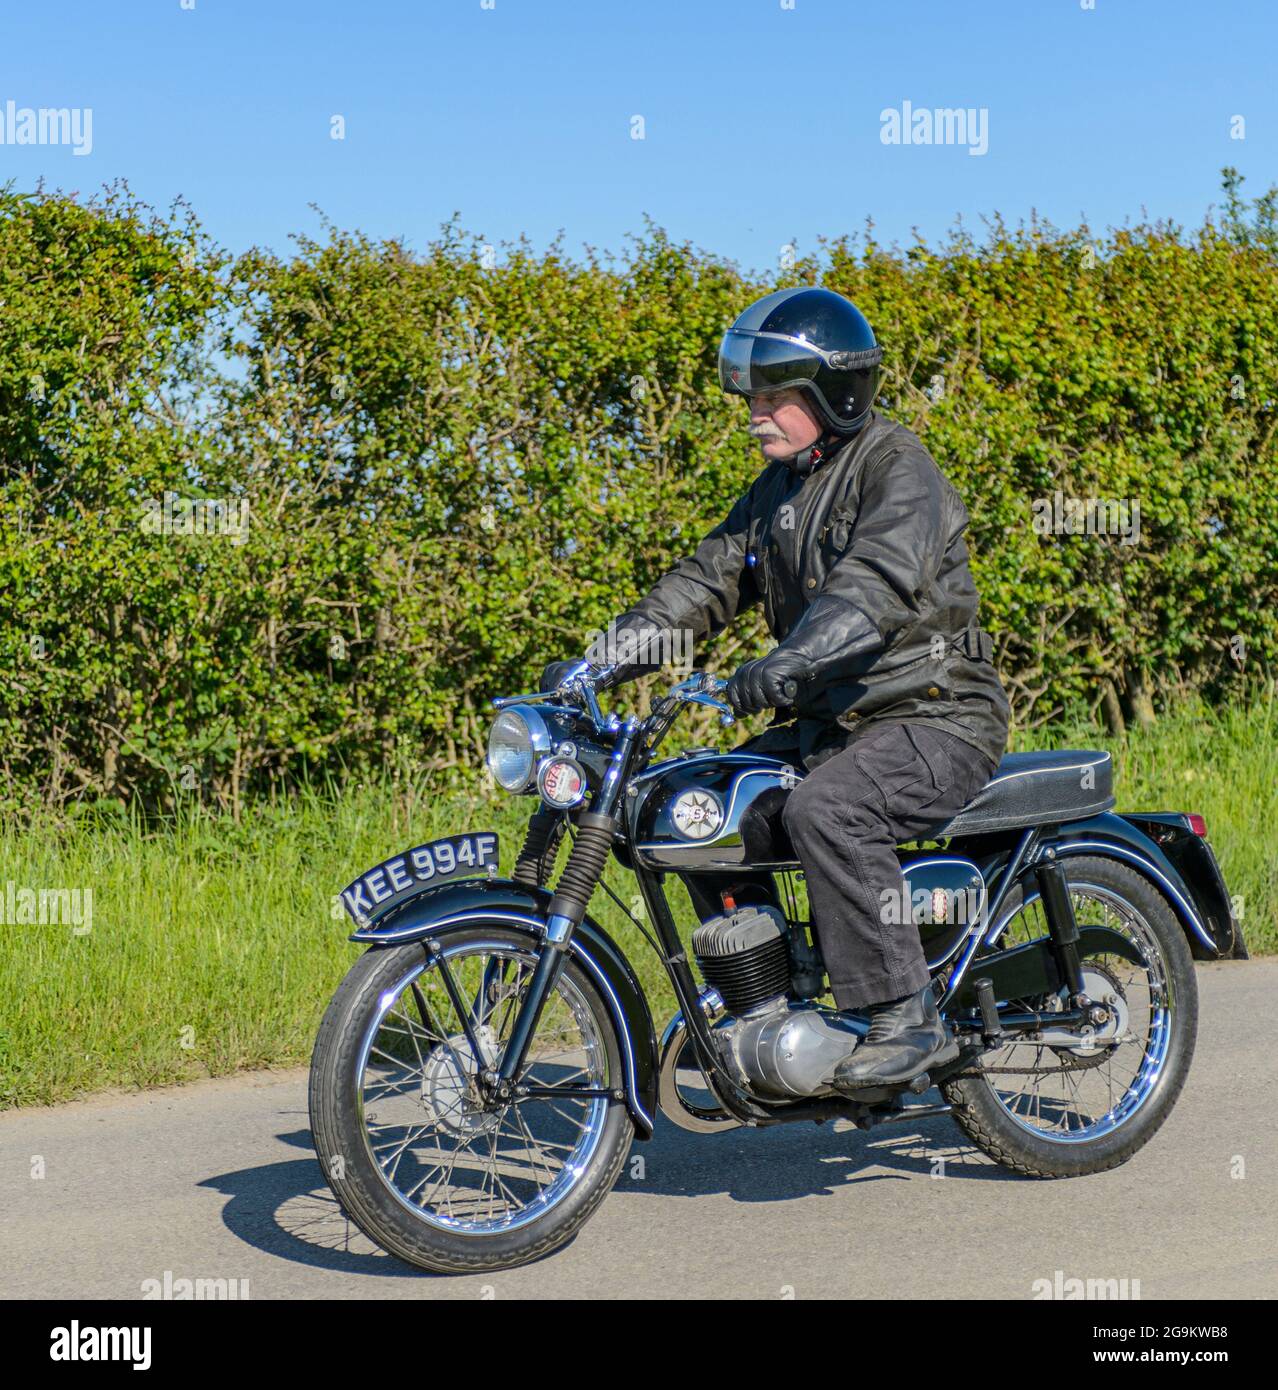 El 1966 D14/4 175cc BSA Bantam Motorcycle, una popular motocicleta vintage que ha sido completamente restaurada y ahora se considera un elemento de coleccionista Foto de stock